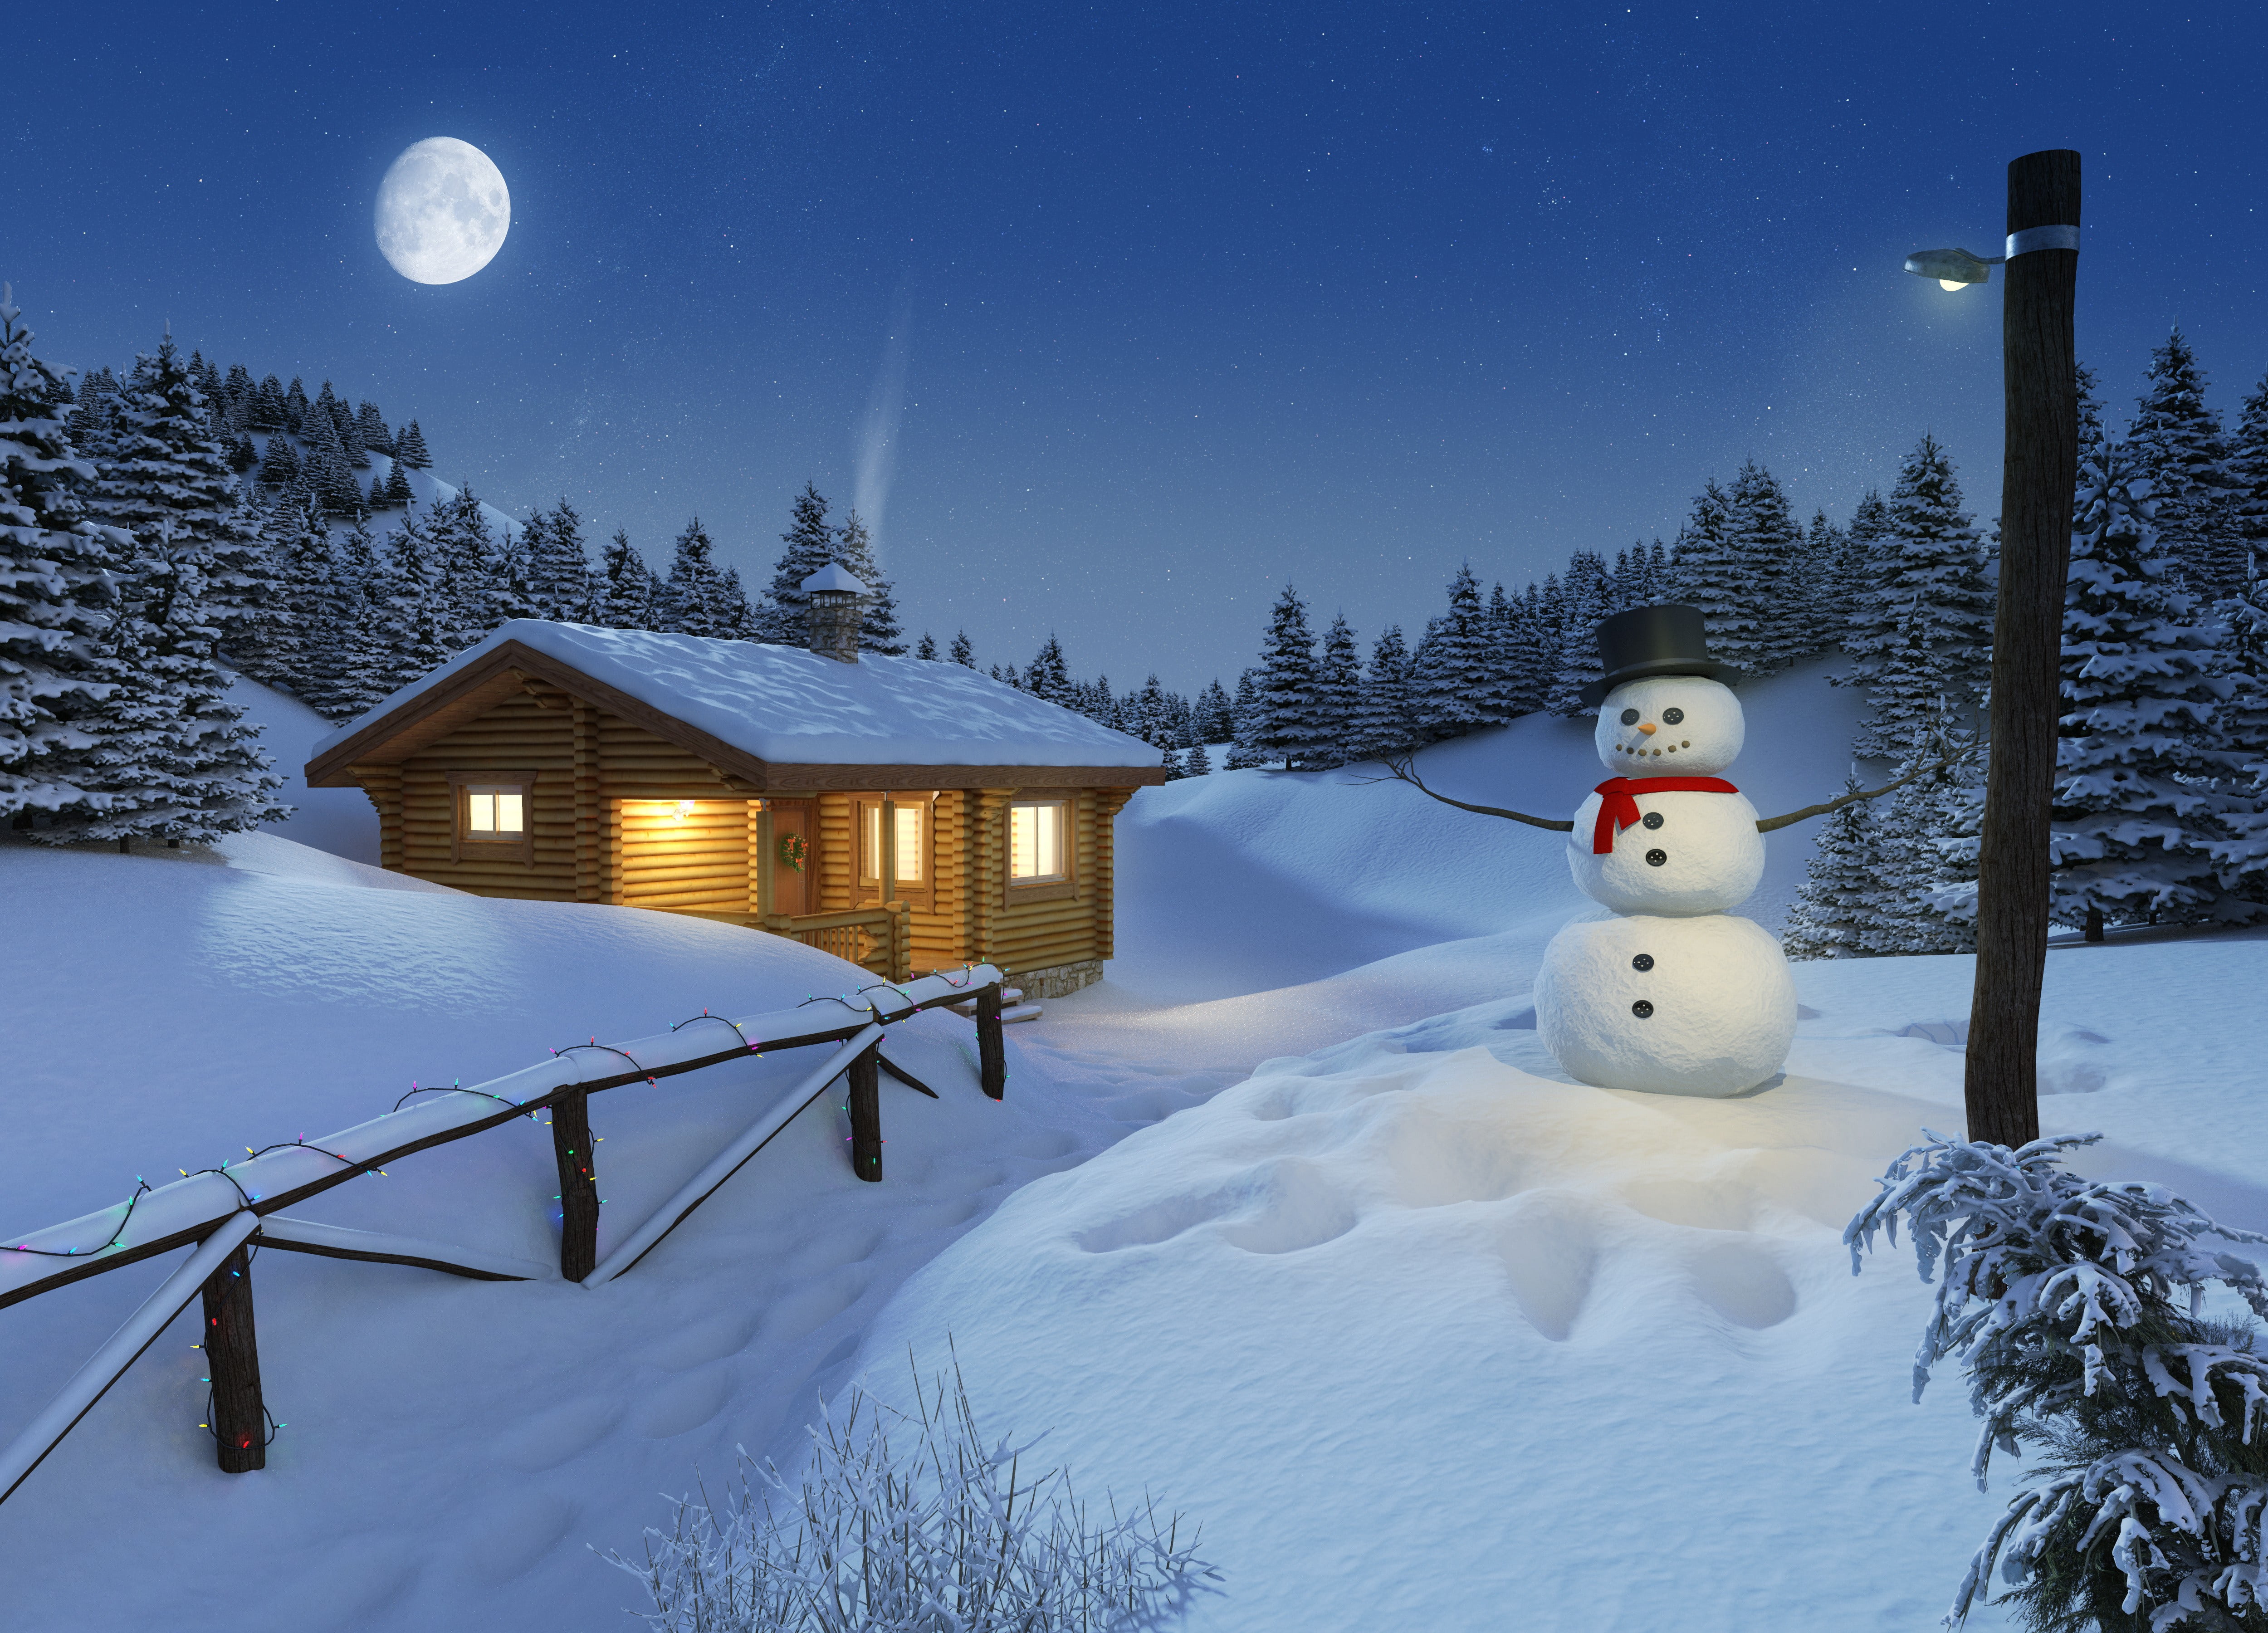 snowman, winter, cold temperature, night, sky, moon, scenics - nature